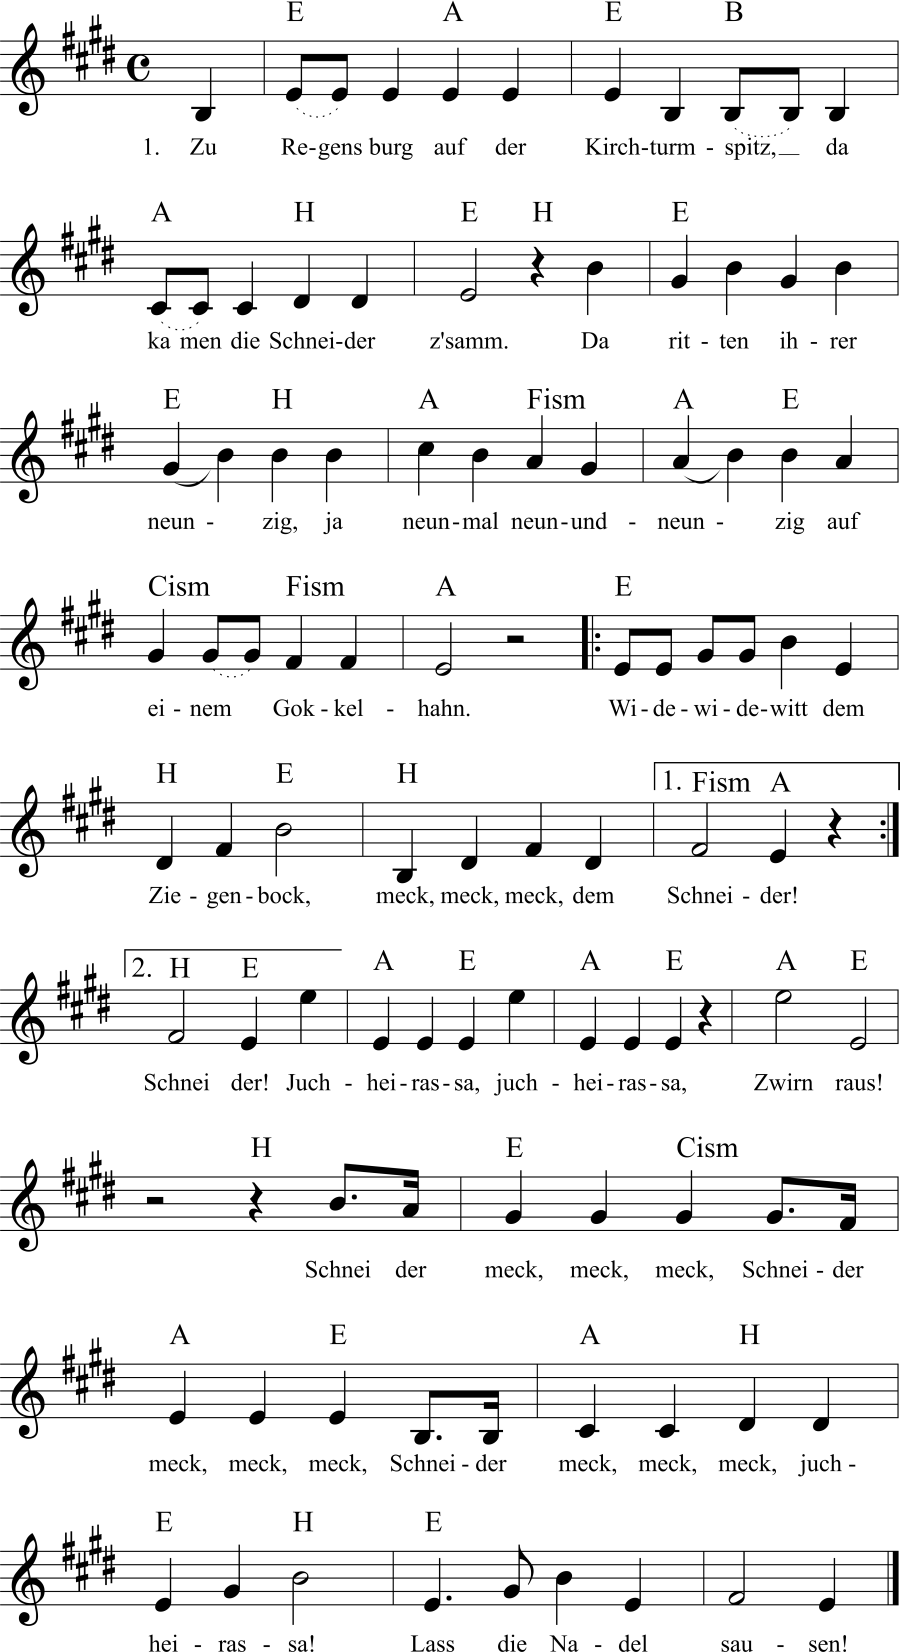 Musiknoten zum Lied - Zu Regensburg auf der Kirchturmspitz